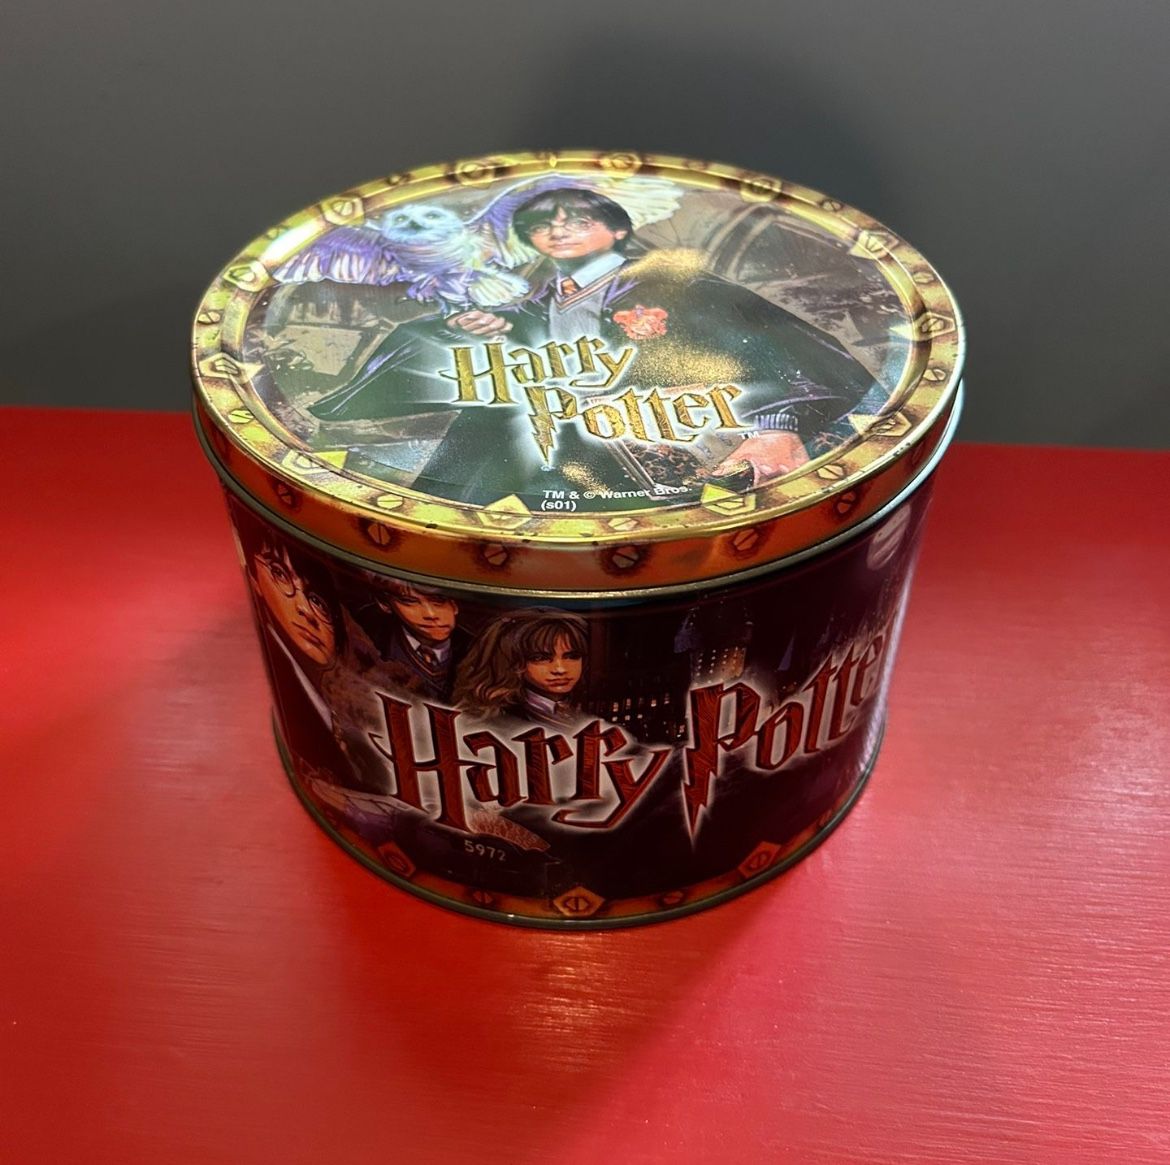 Harry Potter Box Tin Rare Vintage